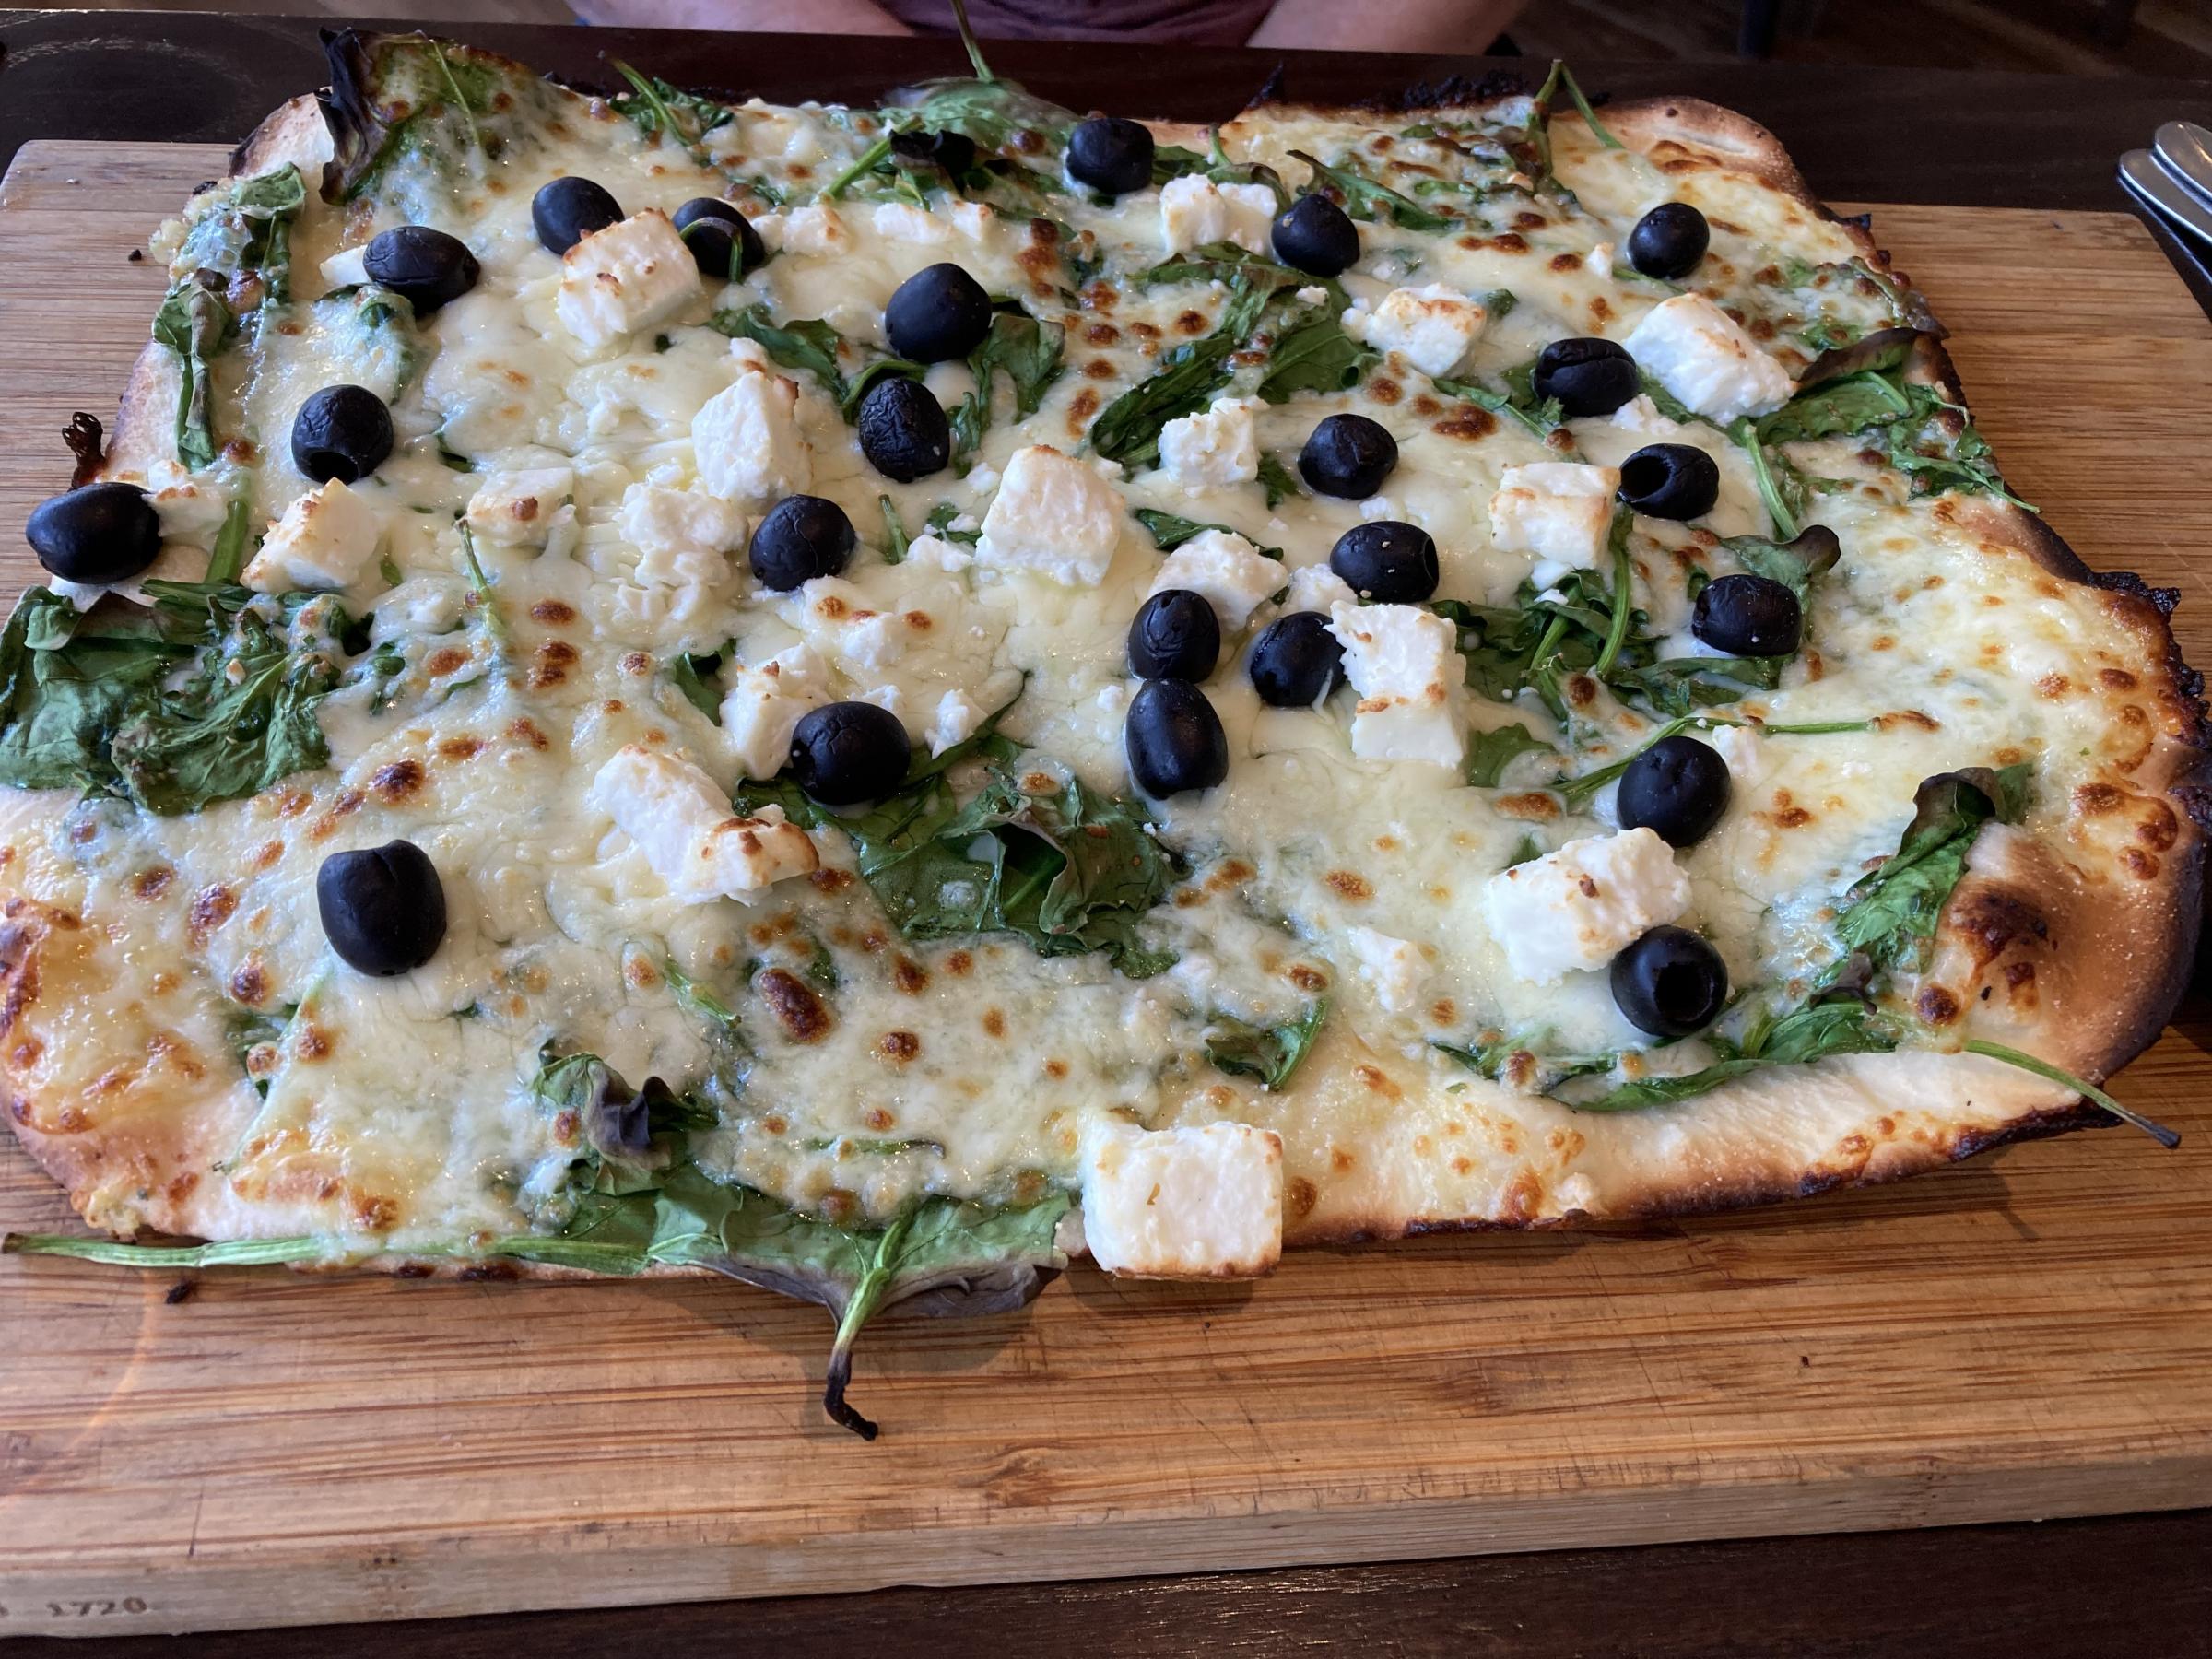 The Pizza Feta at Capri Italian in Barnard Castle